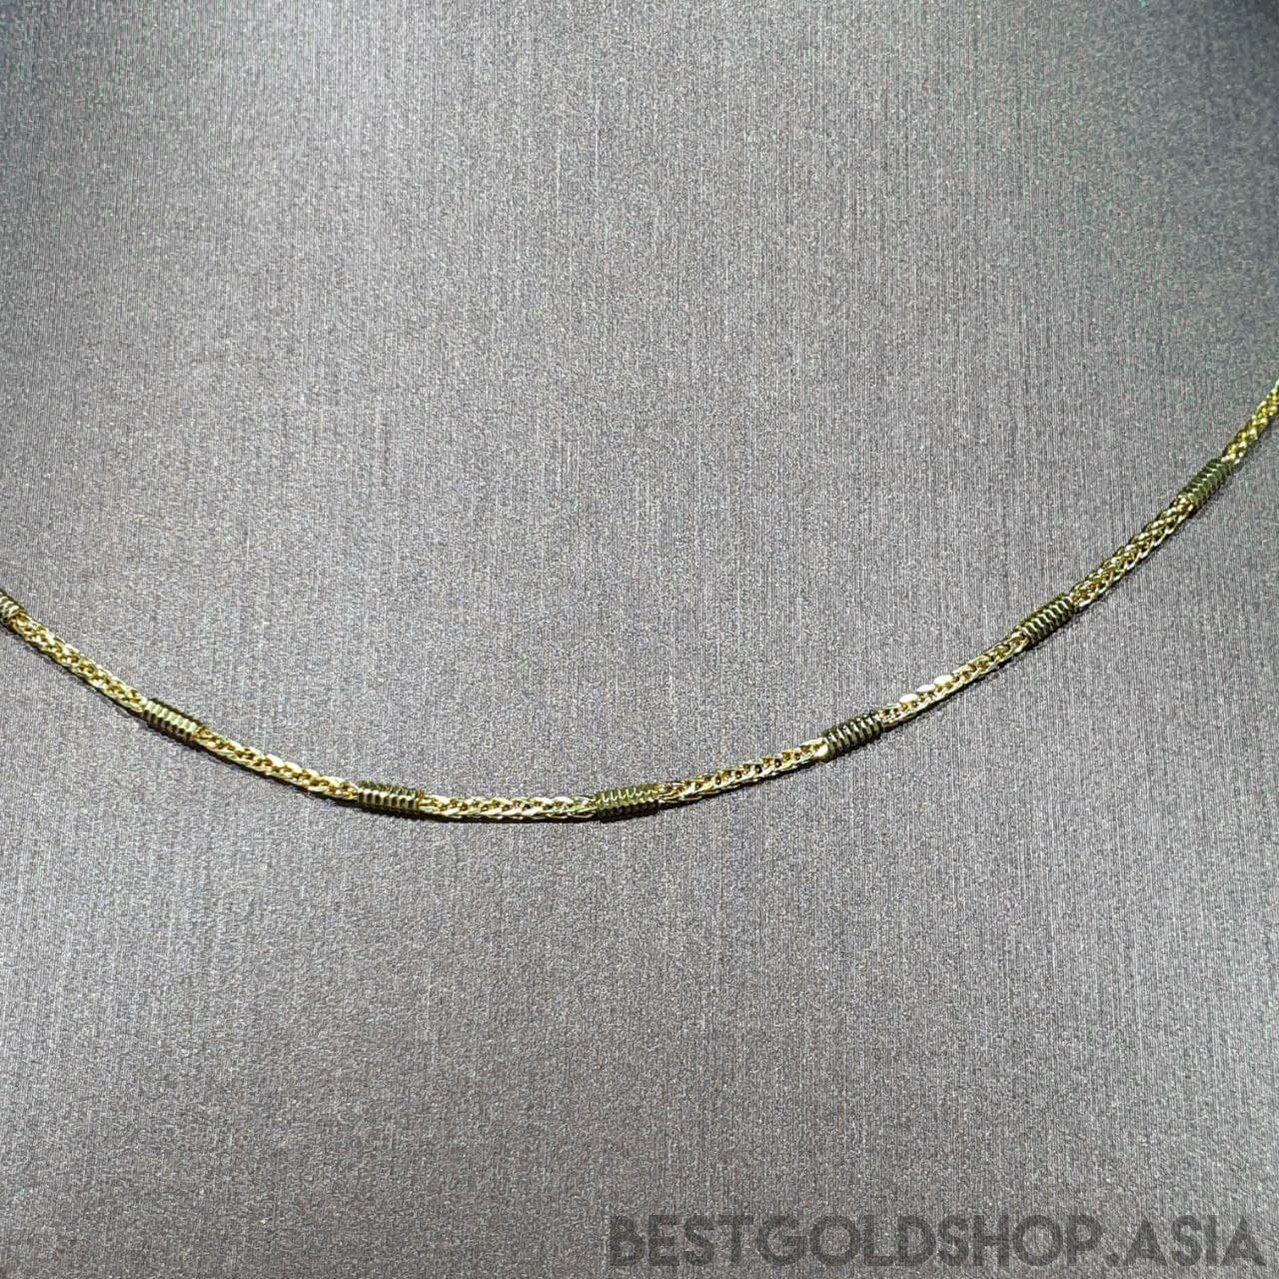 22k / 916 Gold Design necklace V3-916 gold-Best Gold Shop